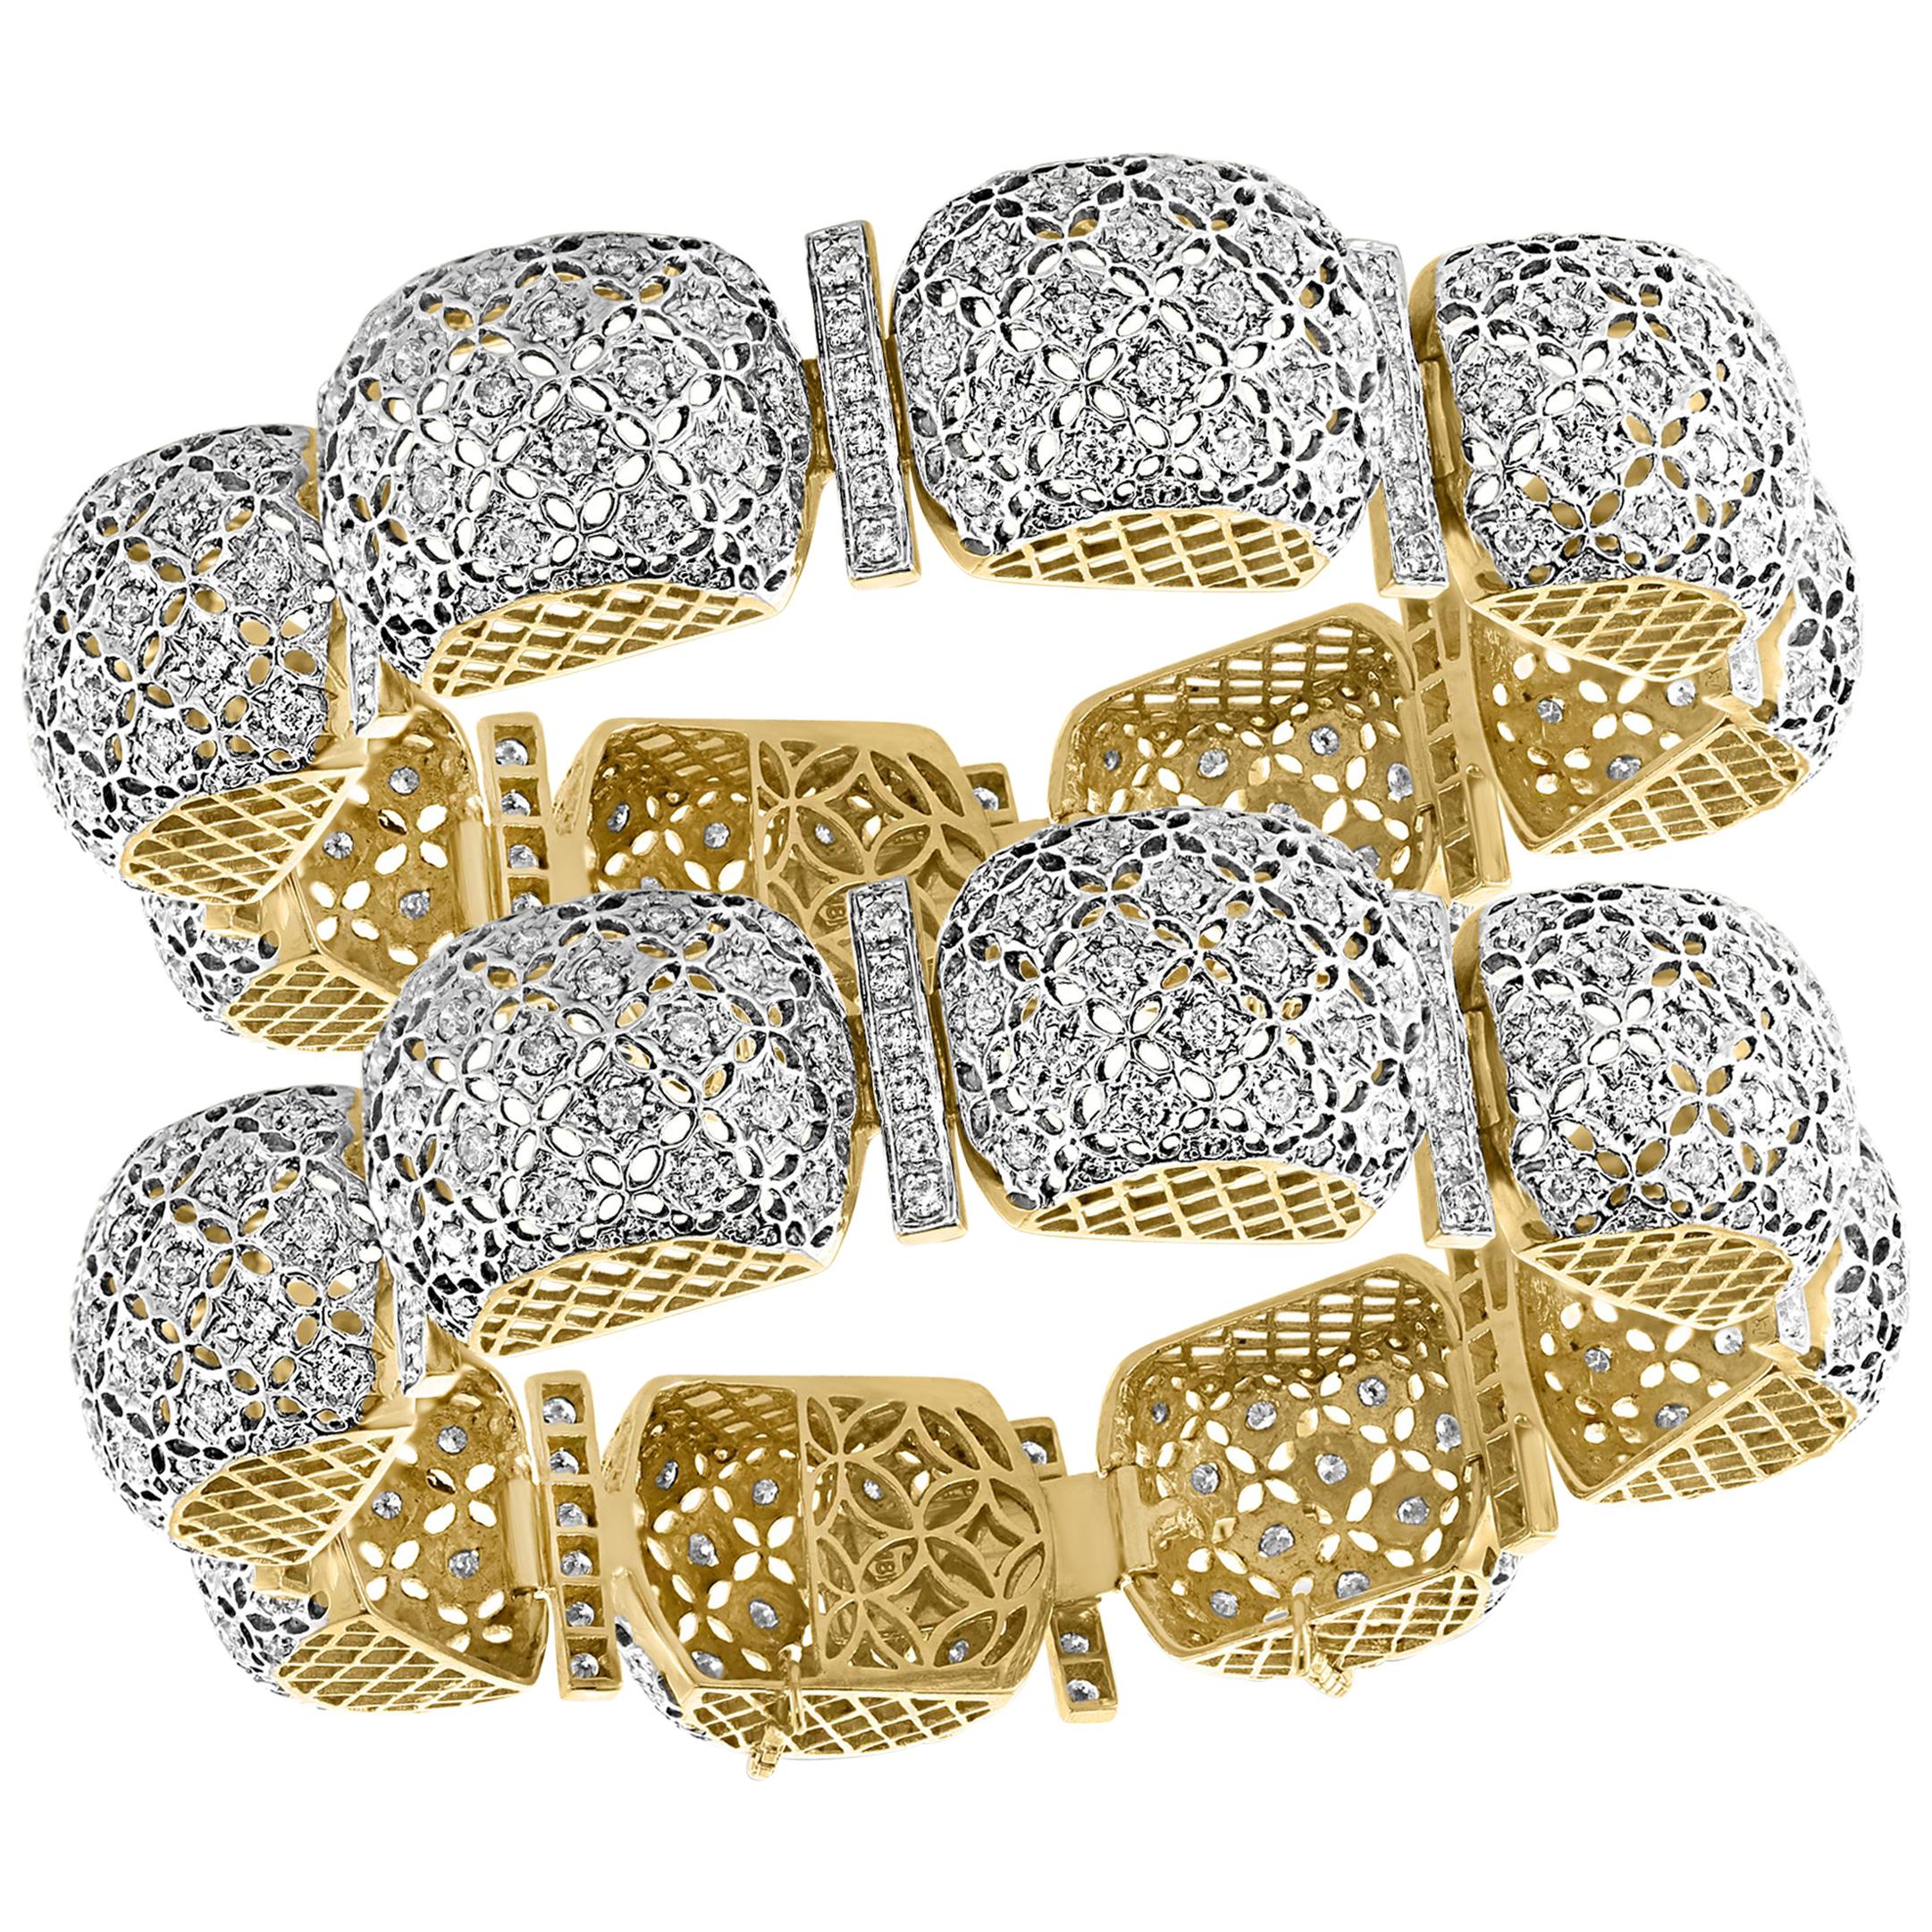 Mugul Style 18 Karat Yellow Gold and Diamonds Pair of Bangle / Bracelet